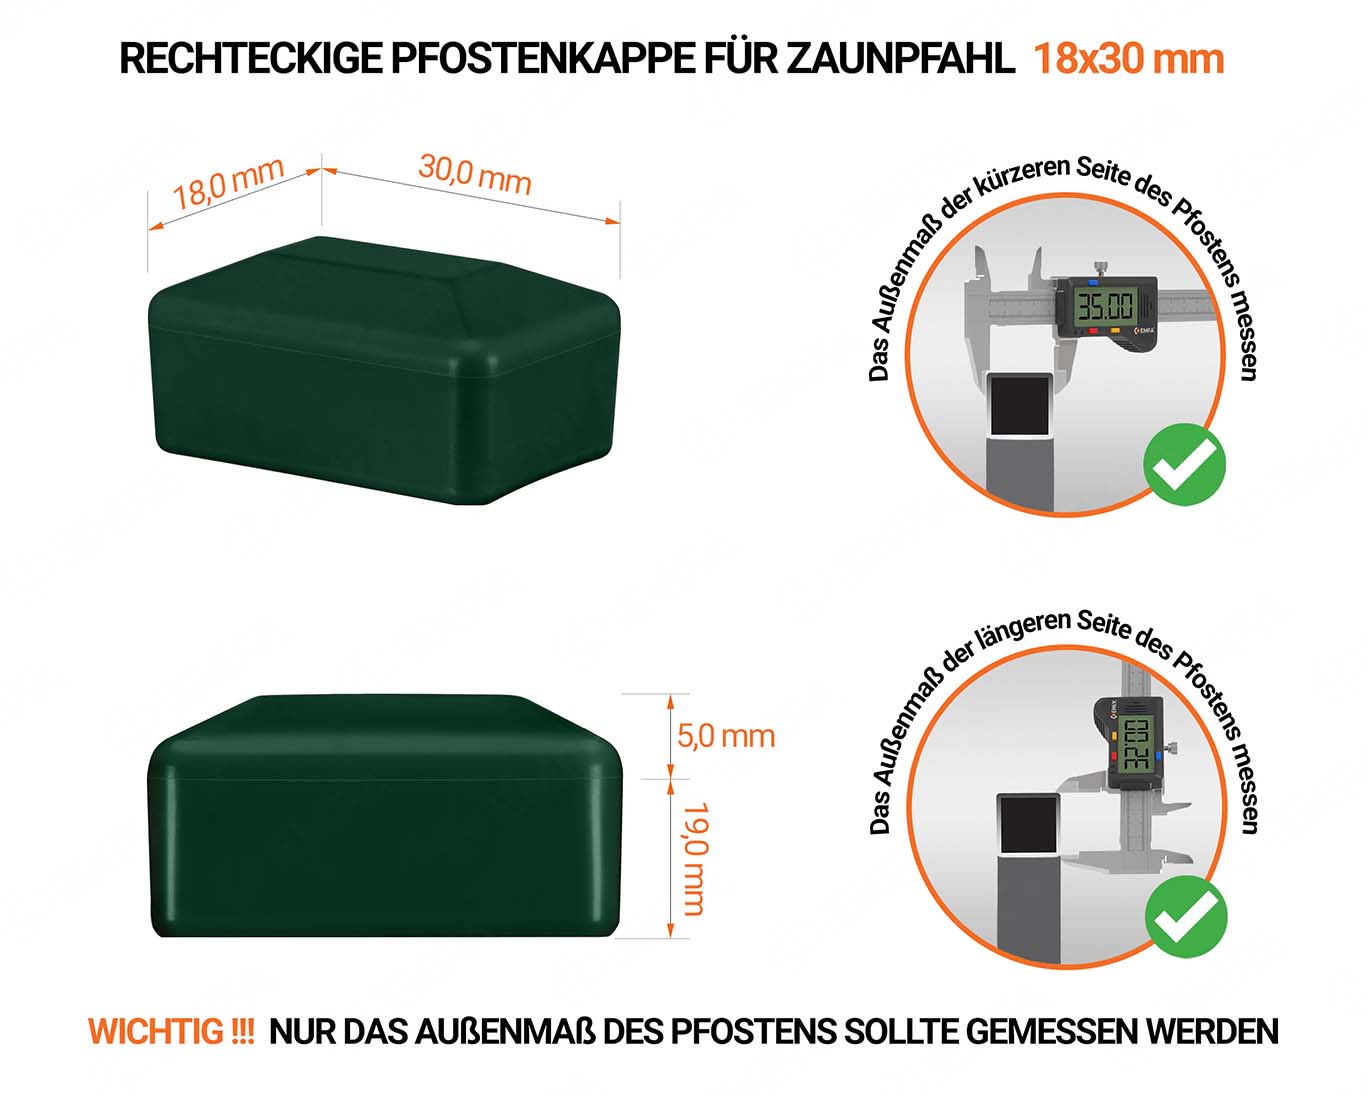 Grüne Pfostenkappen rechteckig für Pfostenmaße 18x30 mm mit technischen Abmessungen und Anleitung für korrekte Messung